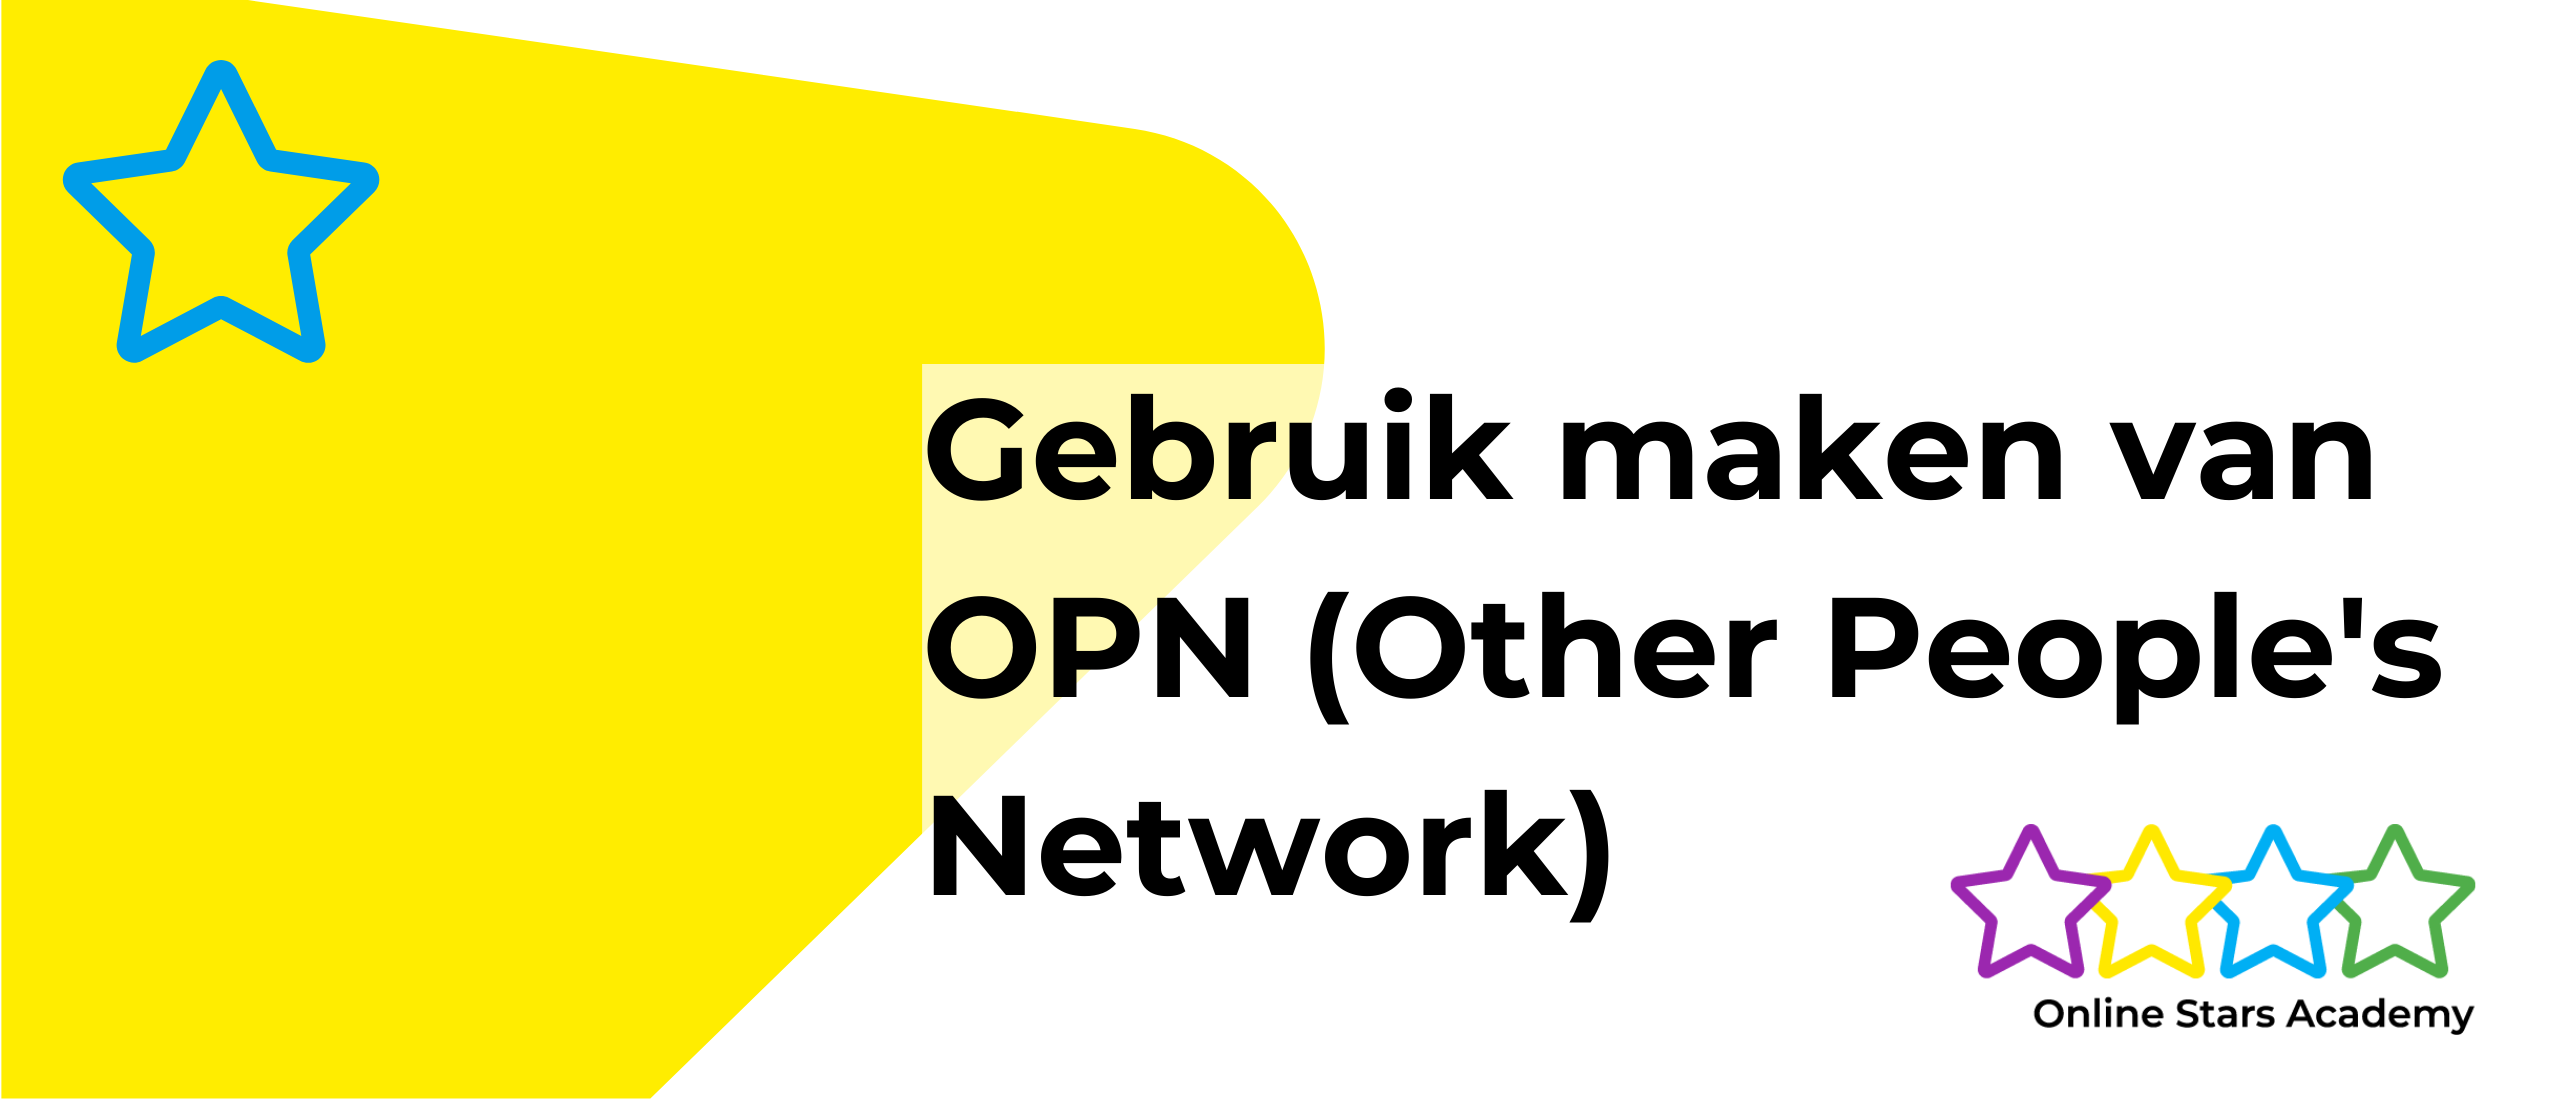 Gebruik maken van OPN (Other People's Network)